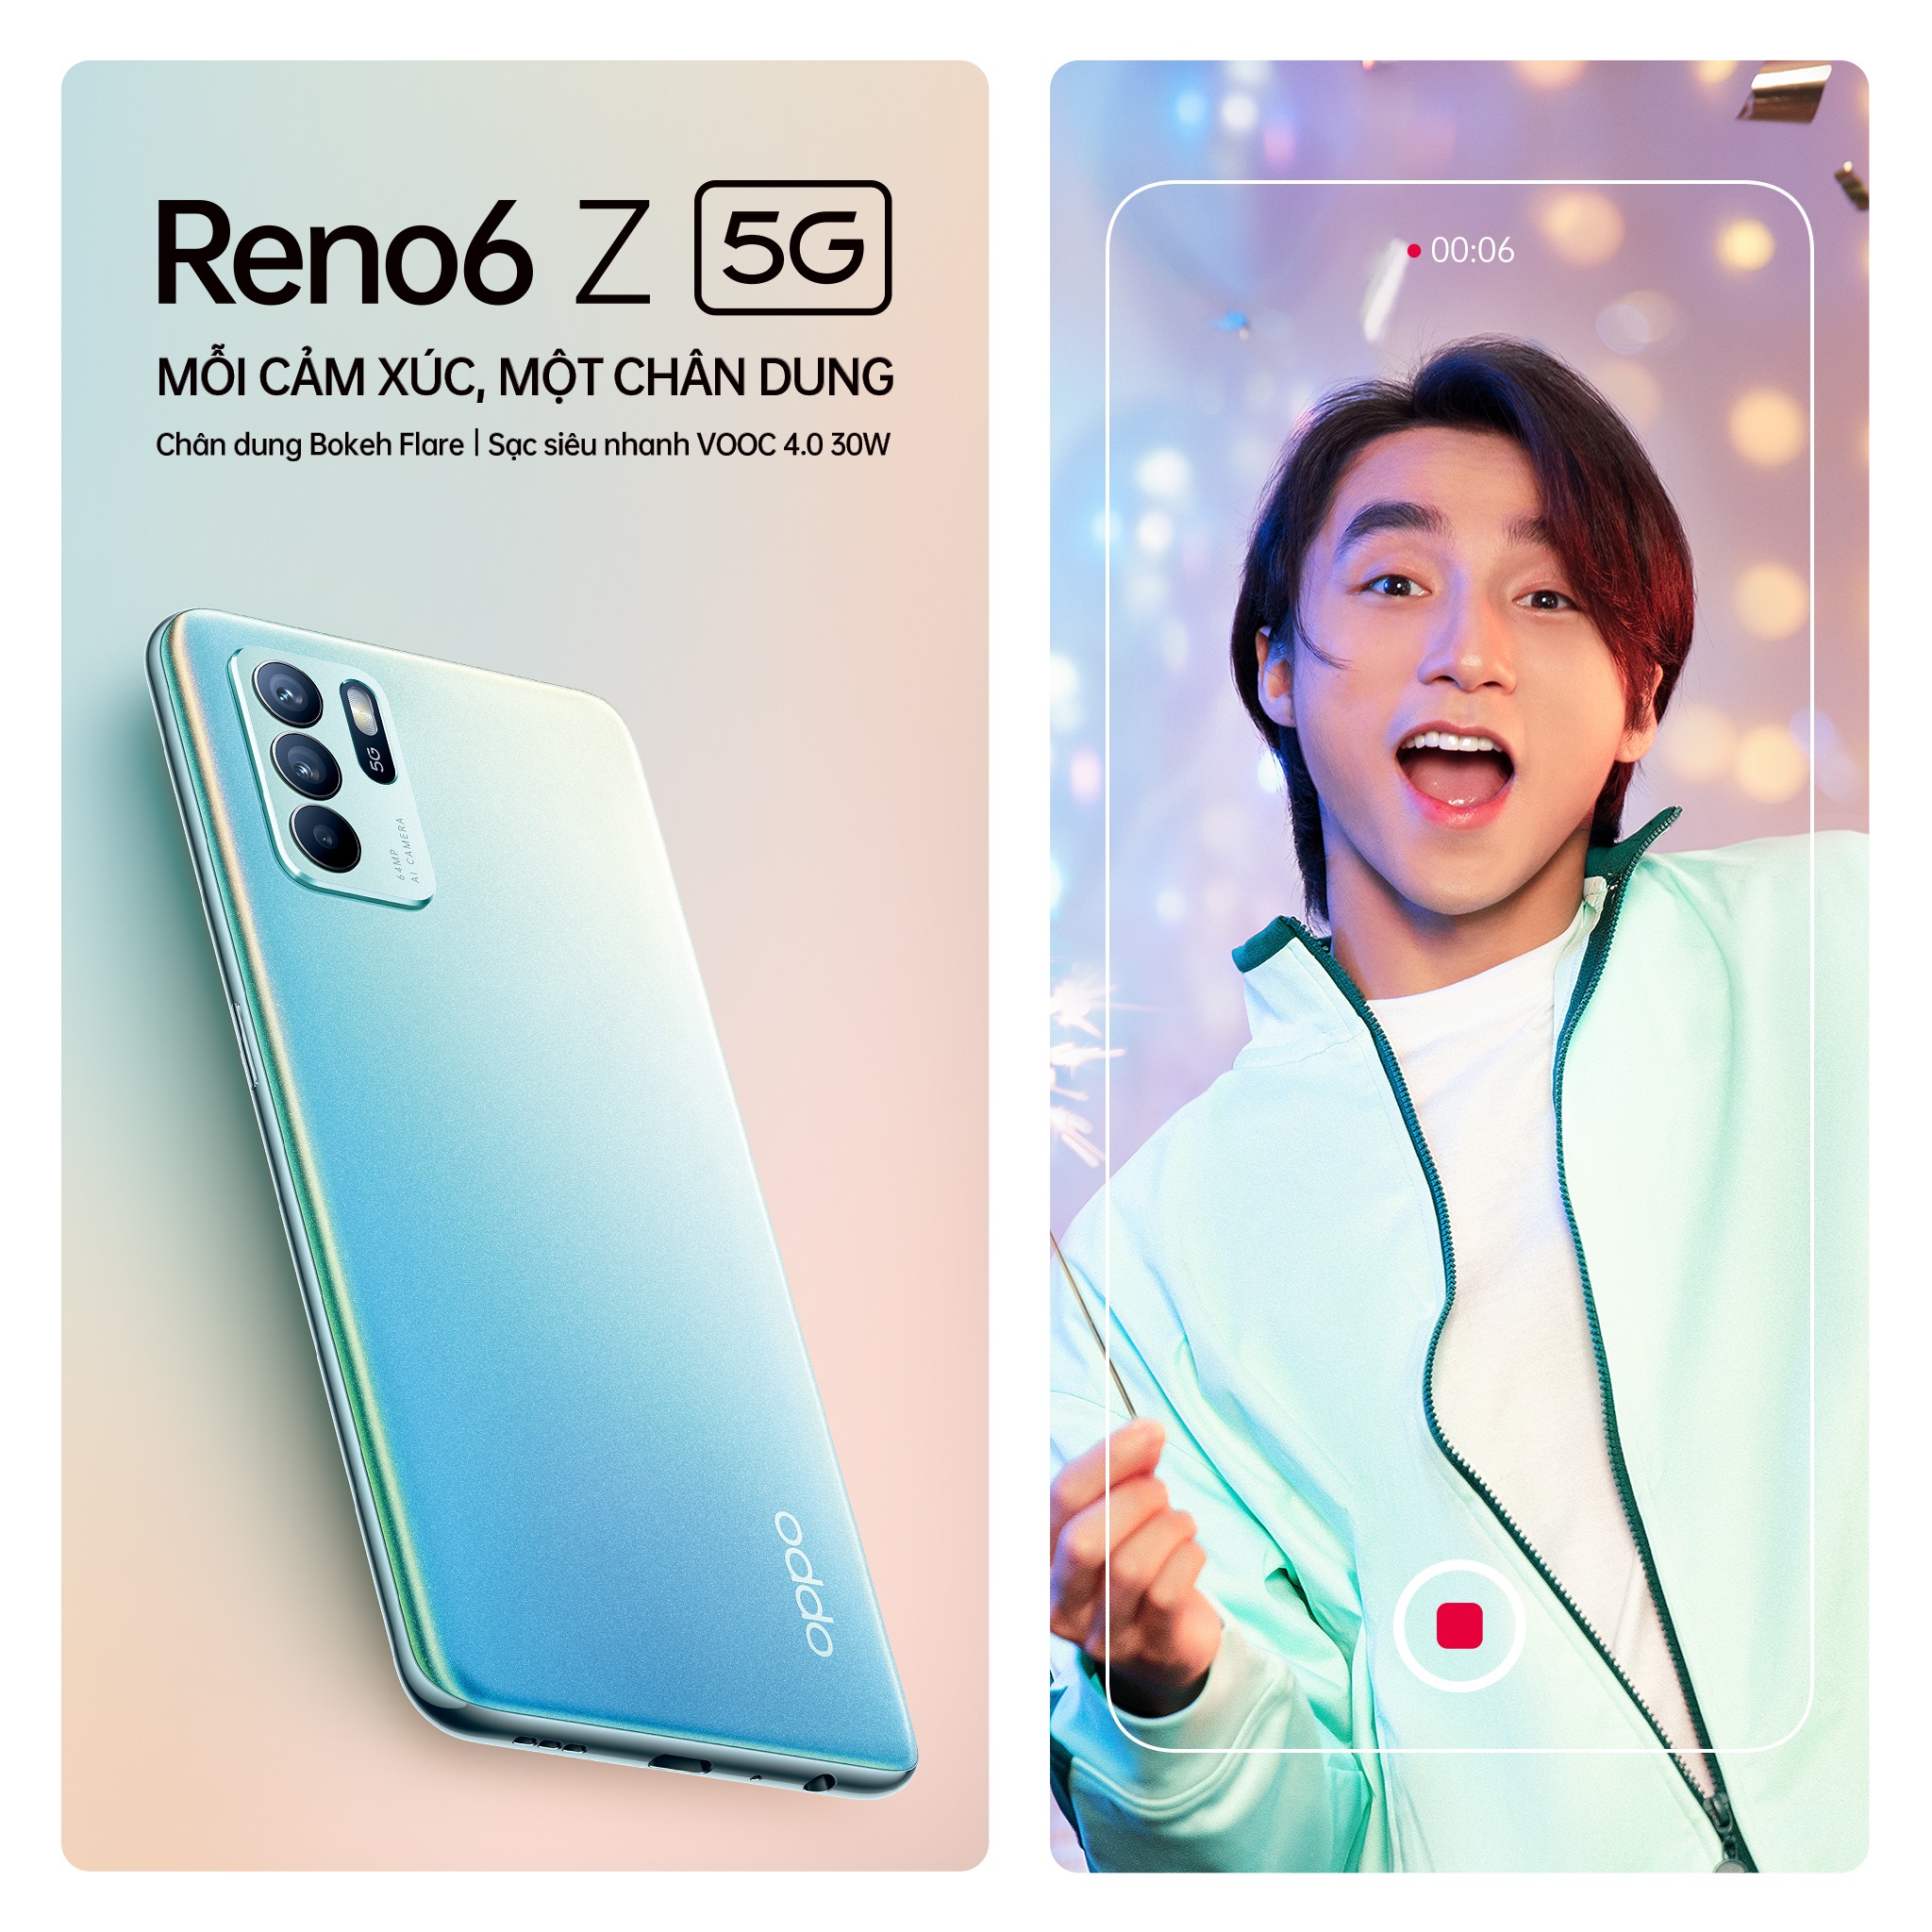 Reno6 Z 5G chuẩn bị ra mắt tại Việt Nam: Màu sắc đẹp mê hồn, tính năng chụp hình cũng xịn không kém